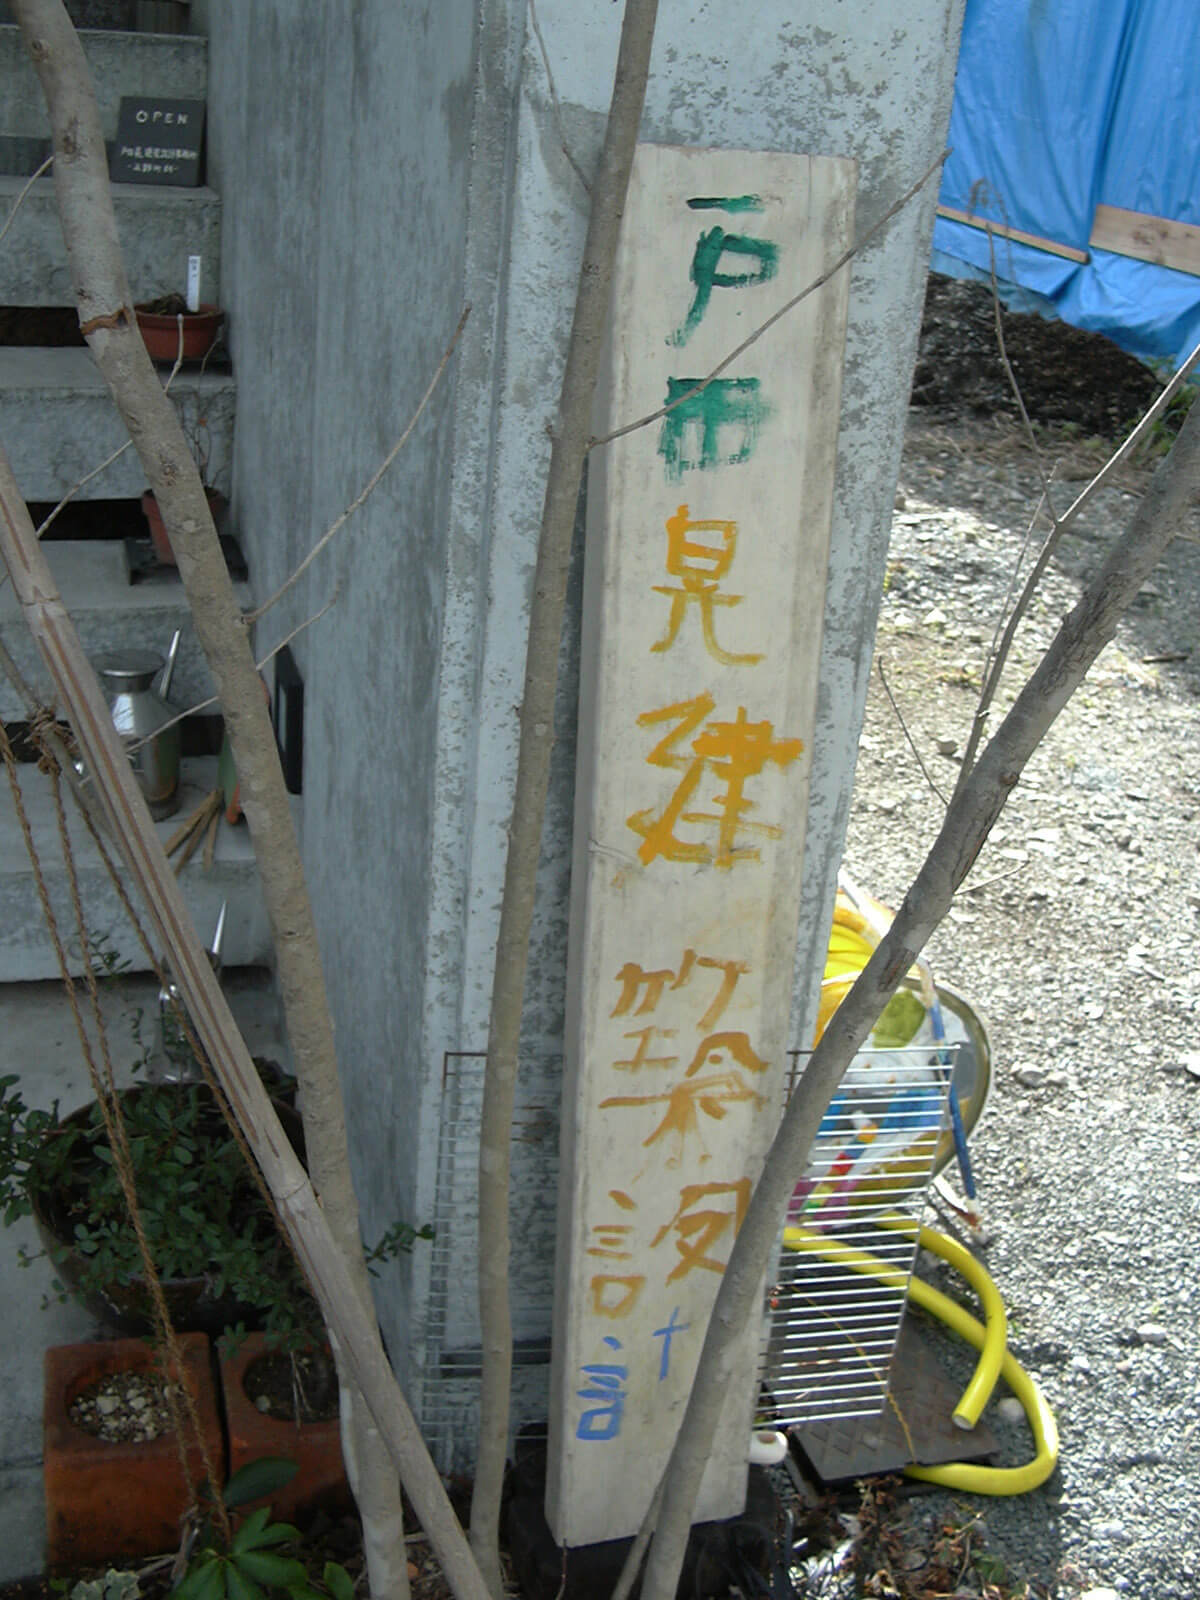 コンクリートの壁に立てかけられた、細長い木に子供の字で書かれた、戸田晃建築設計事務所の看板